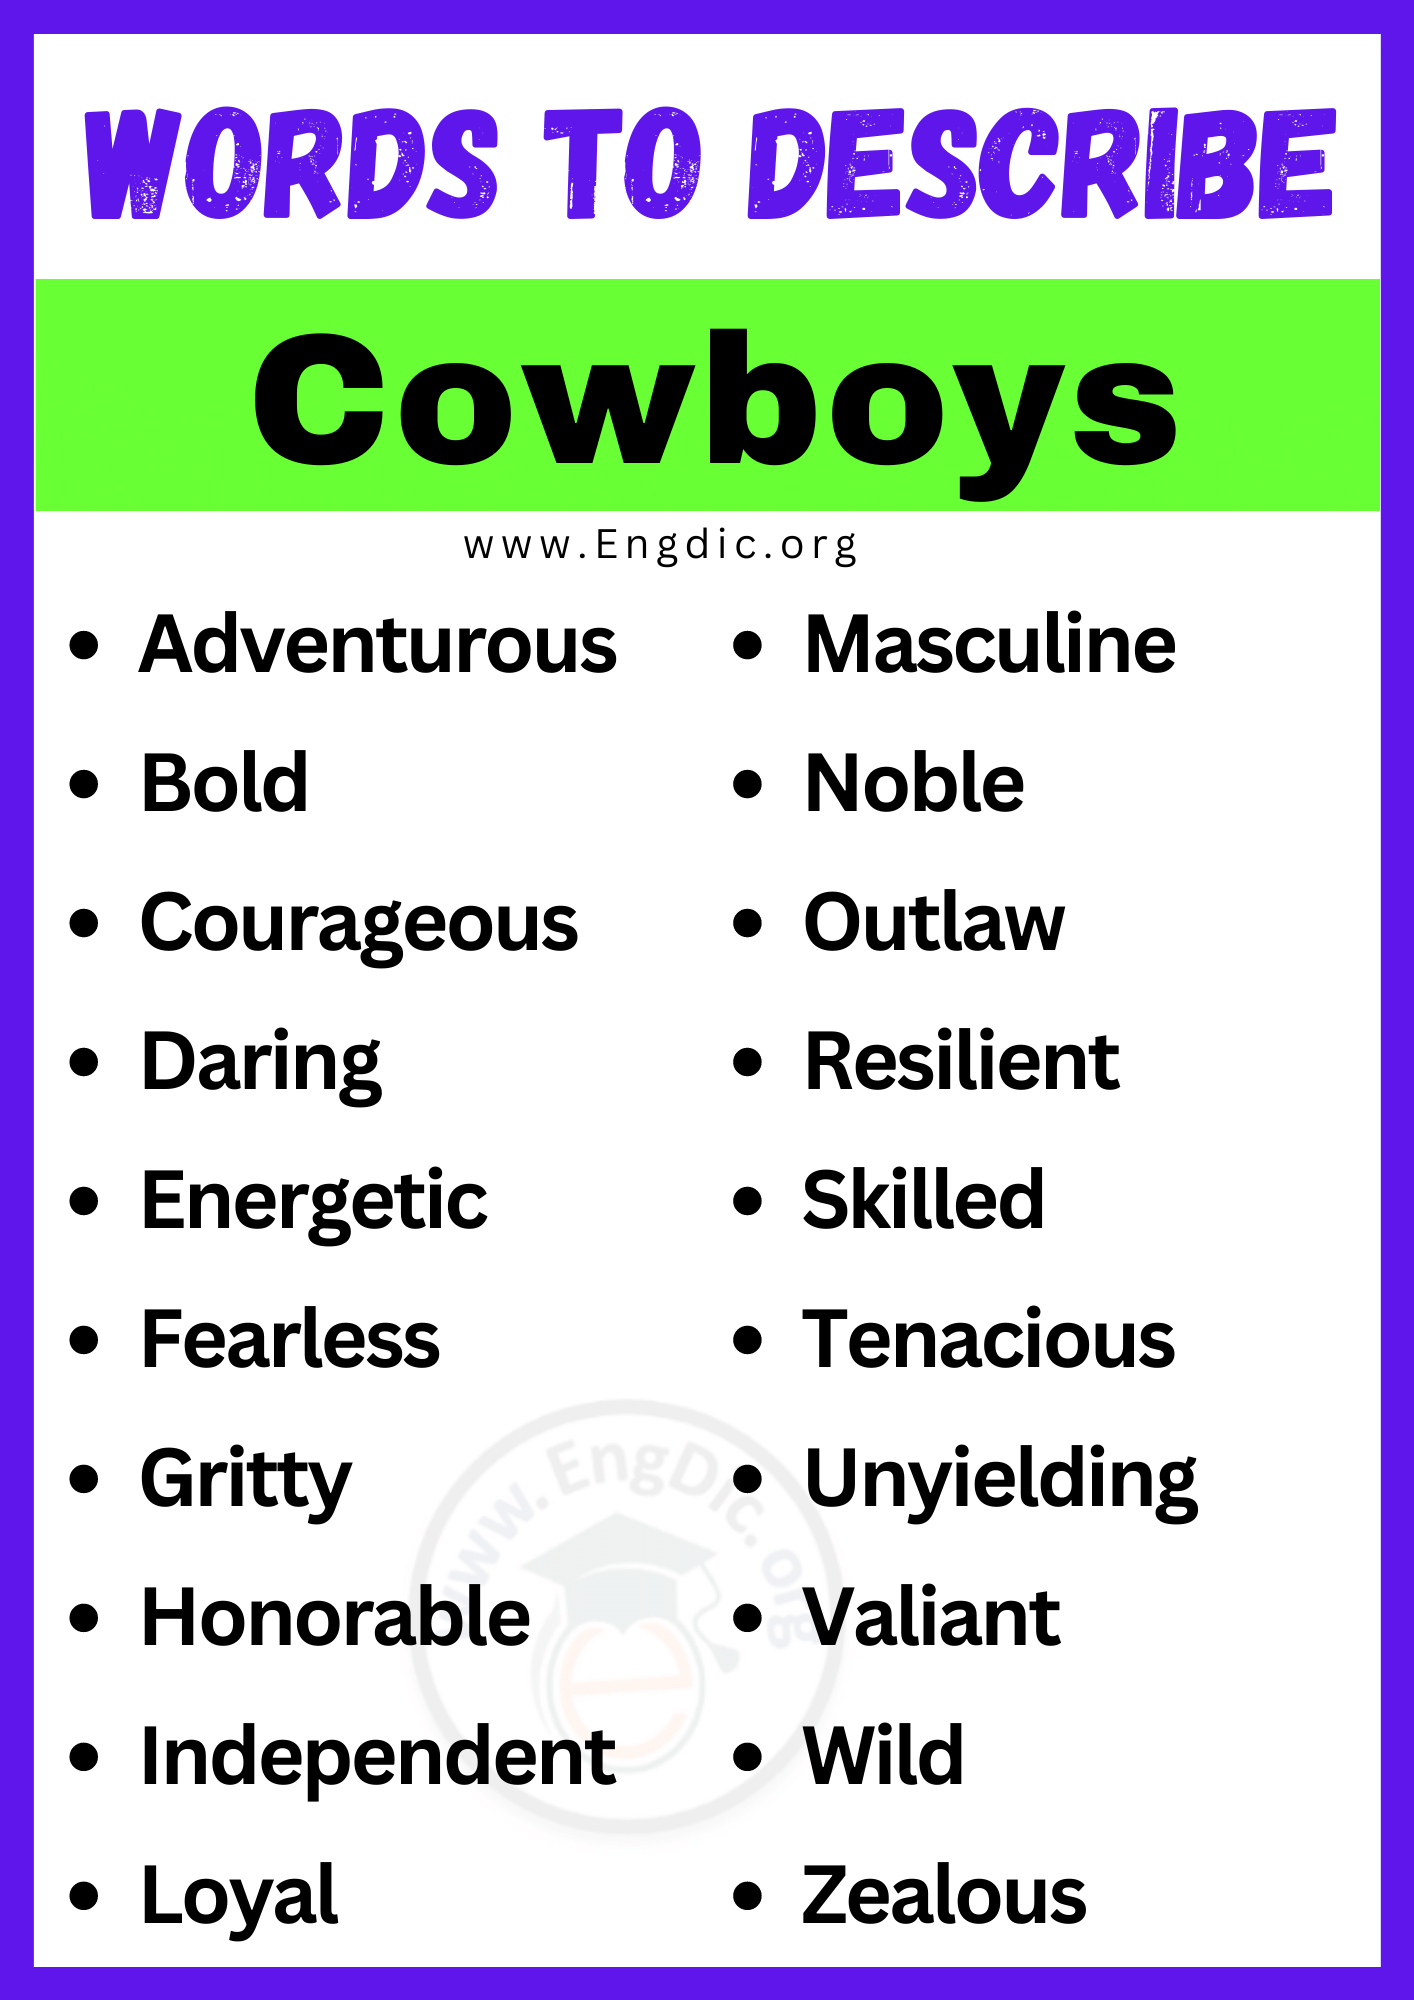 Words to Describe Cowboys